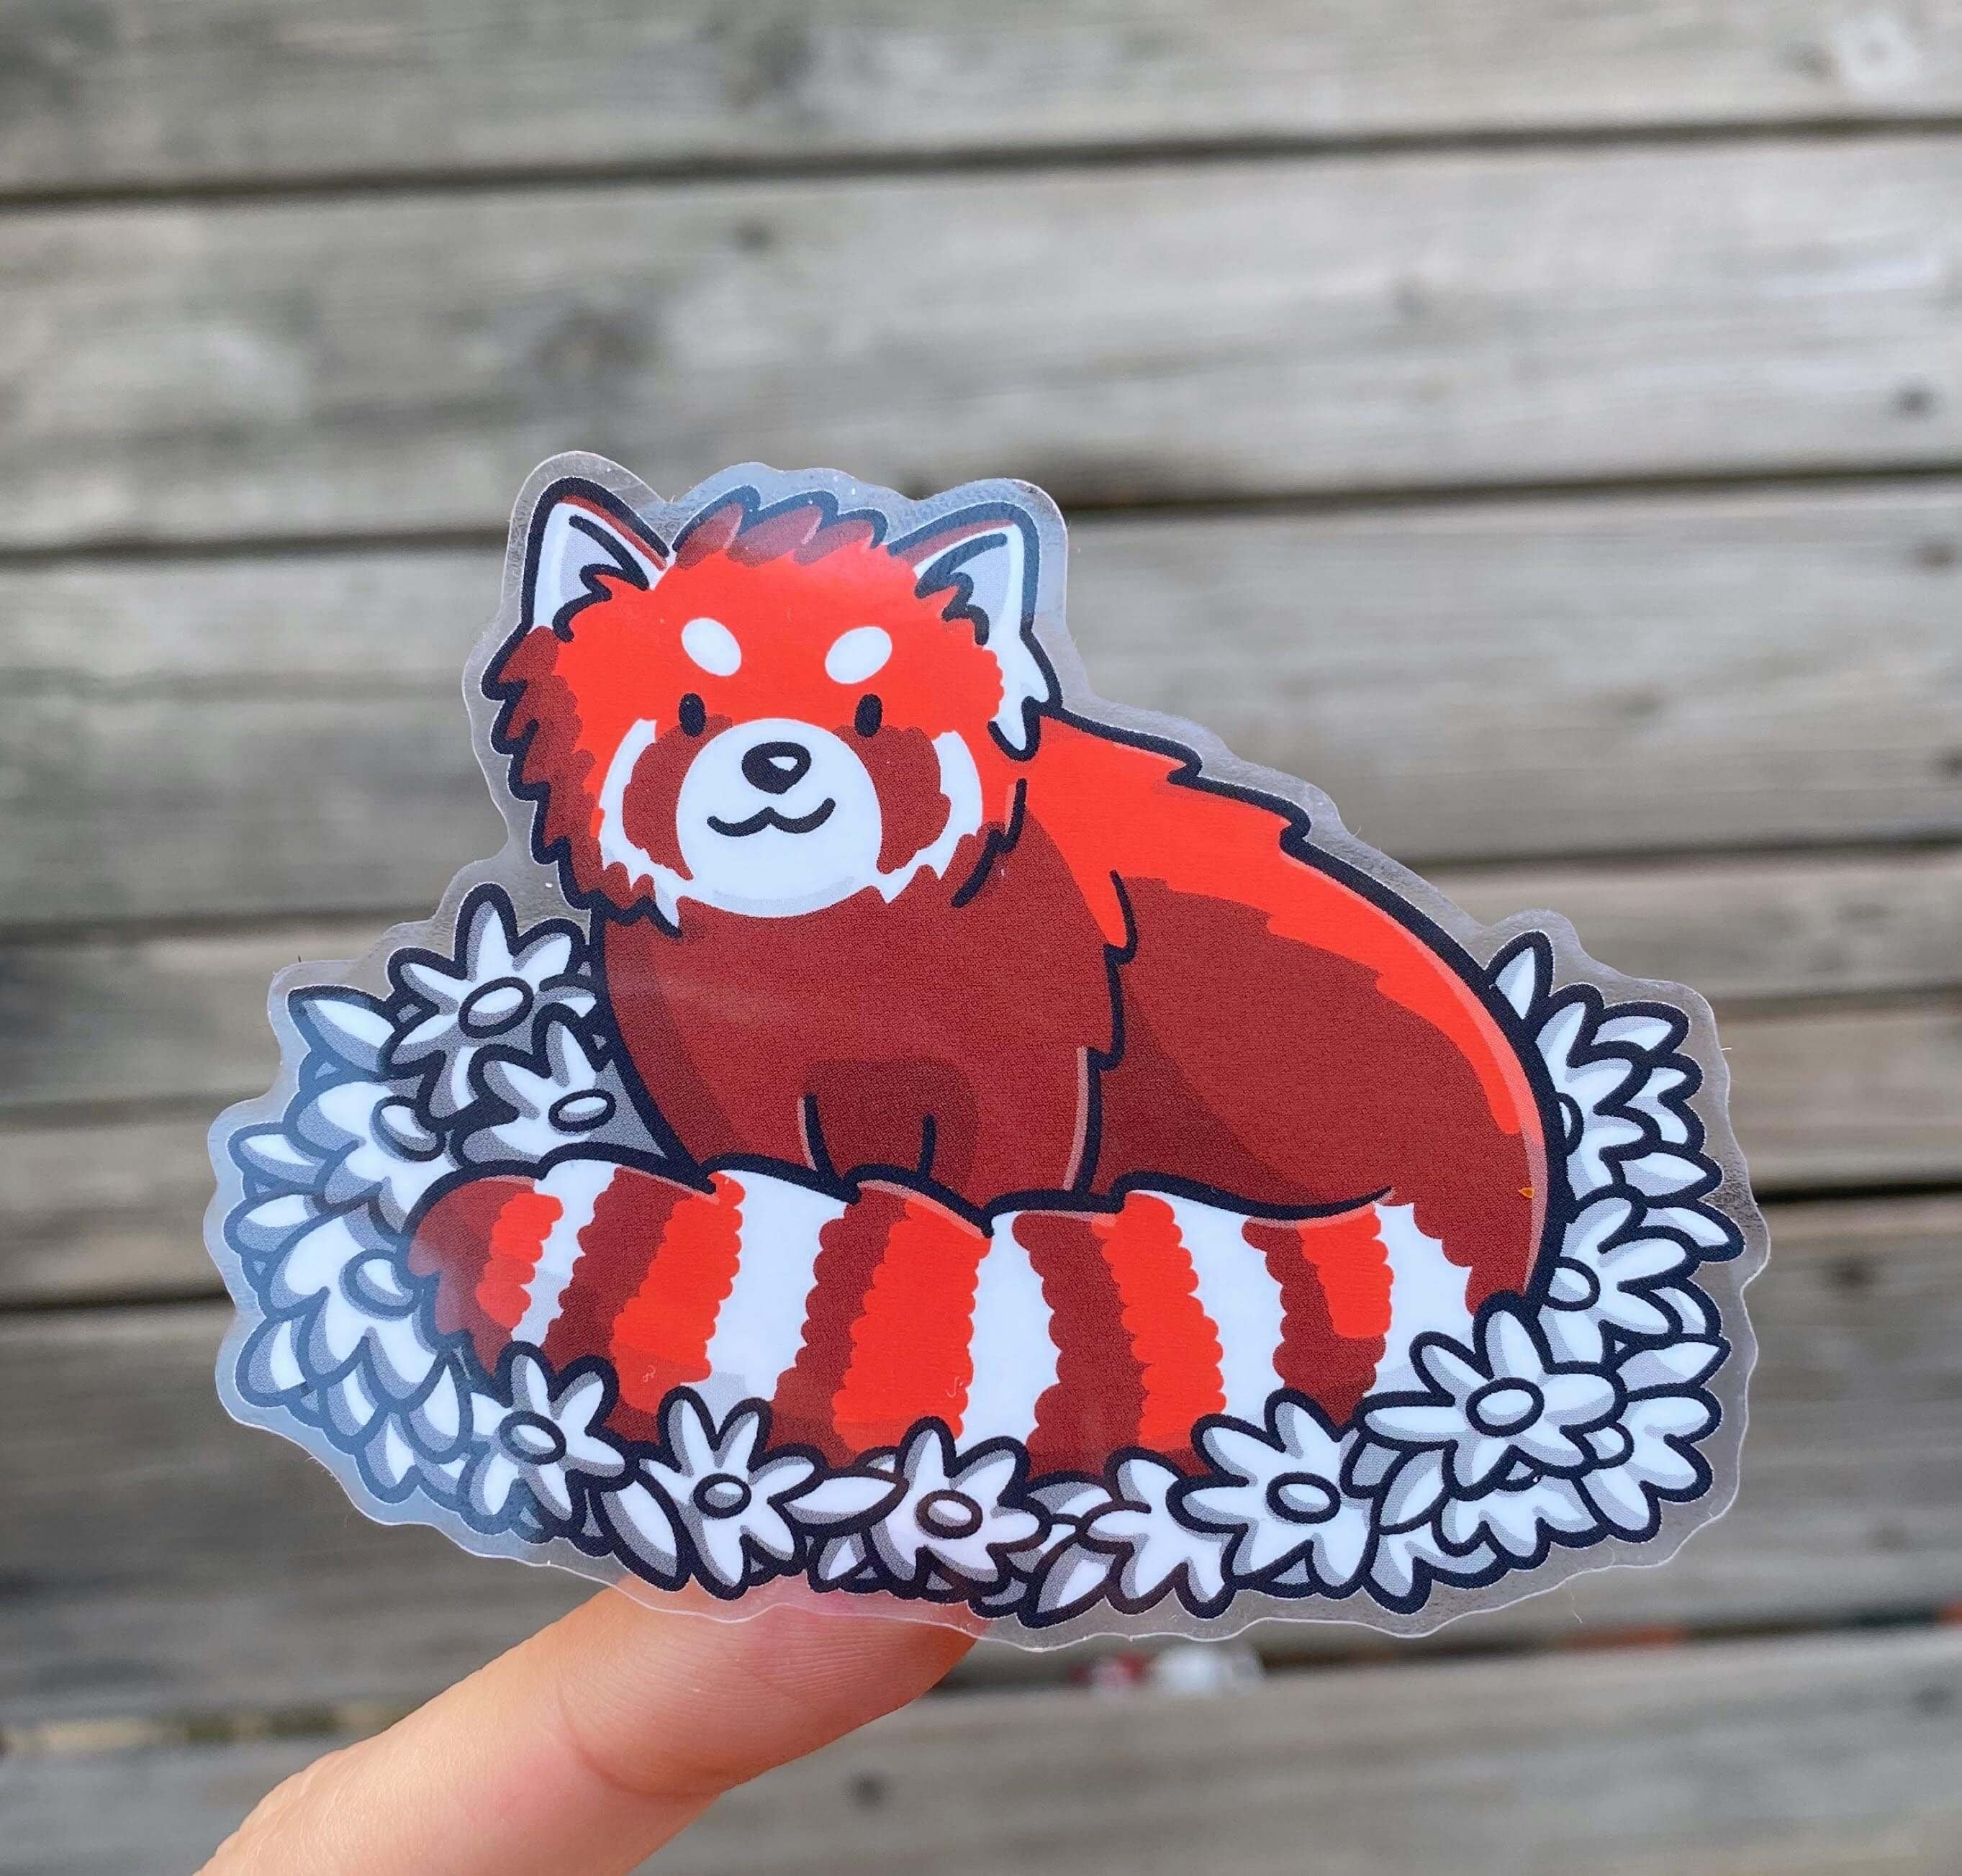 Red Panda Clear Sticker